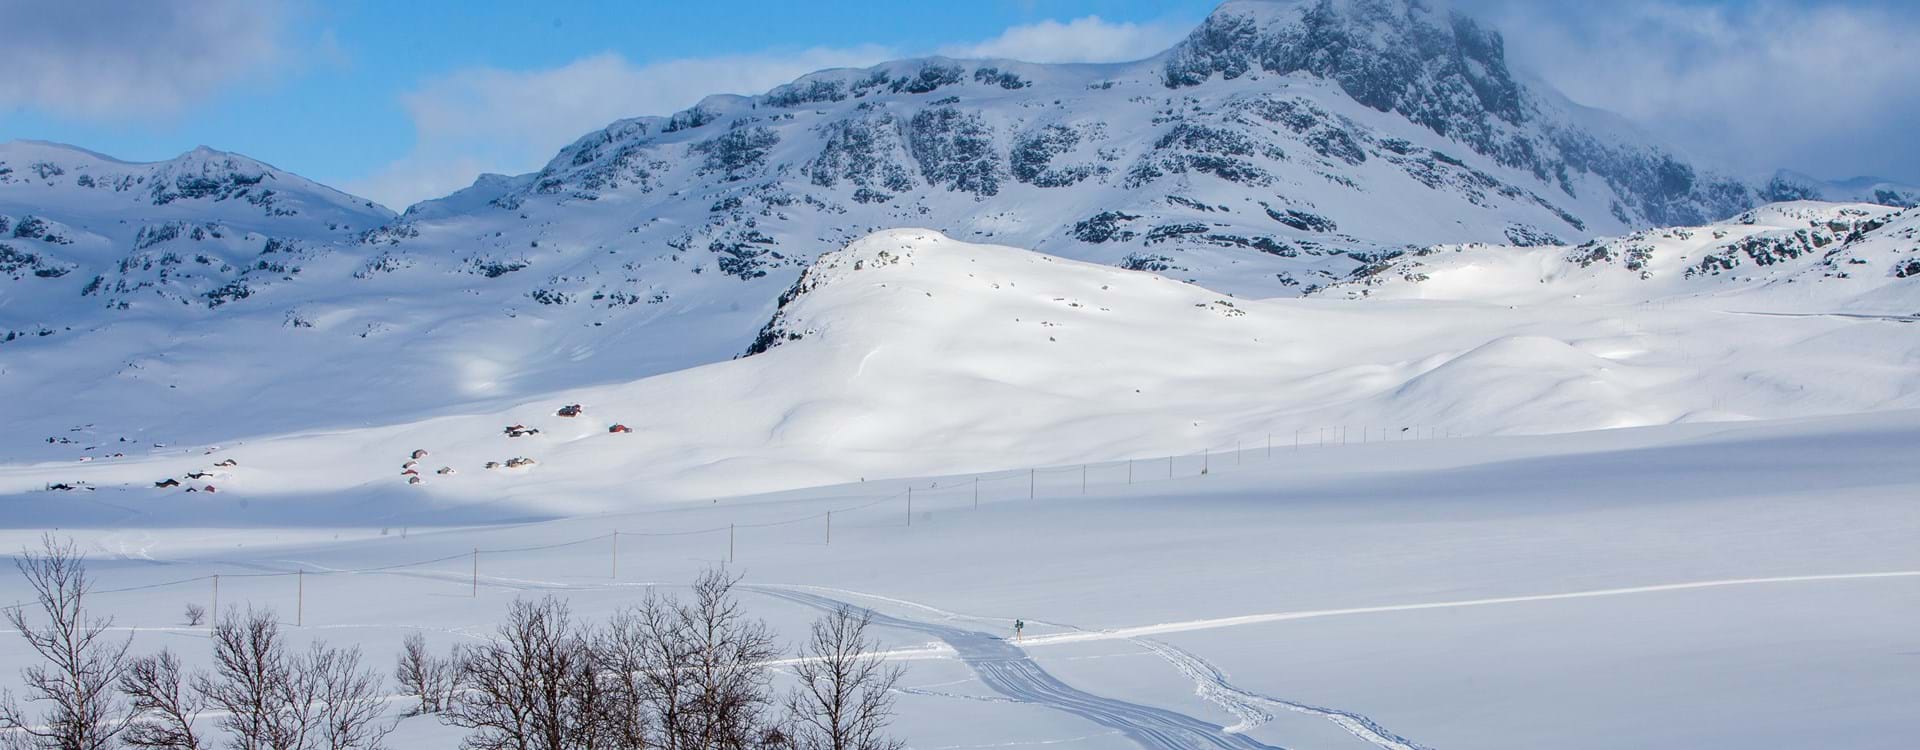 Det er bare nytelse å starte dagen med en skitur innover fjellet. Vi har nypreppede løyper hver dag hele vinteren. Følg med på www.beitolangrenn.no